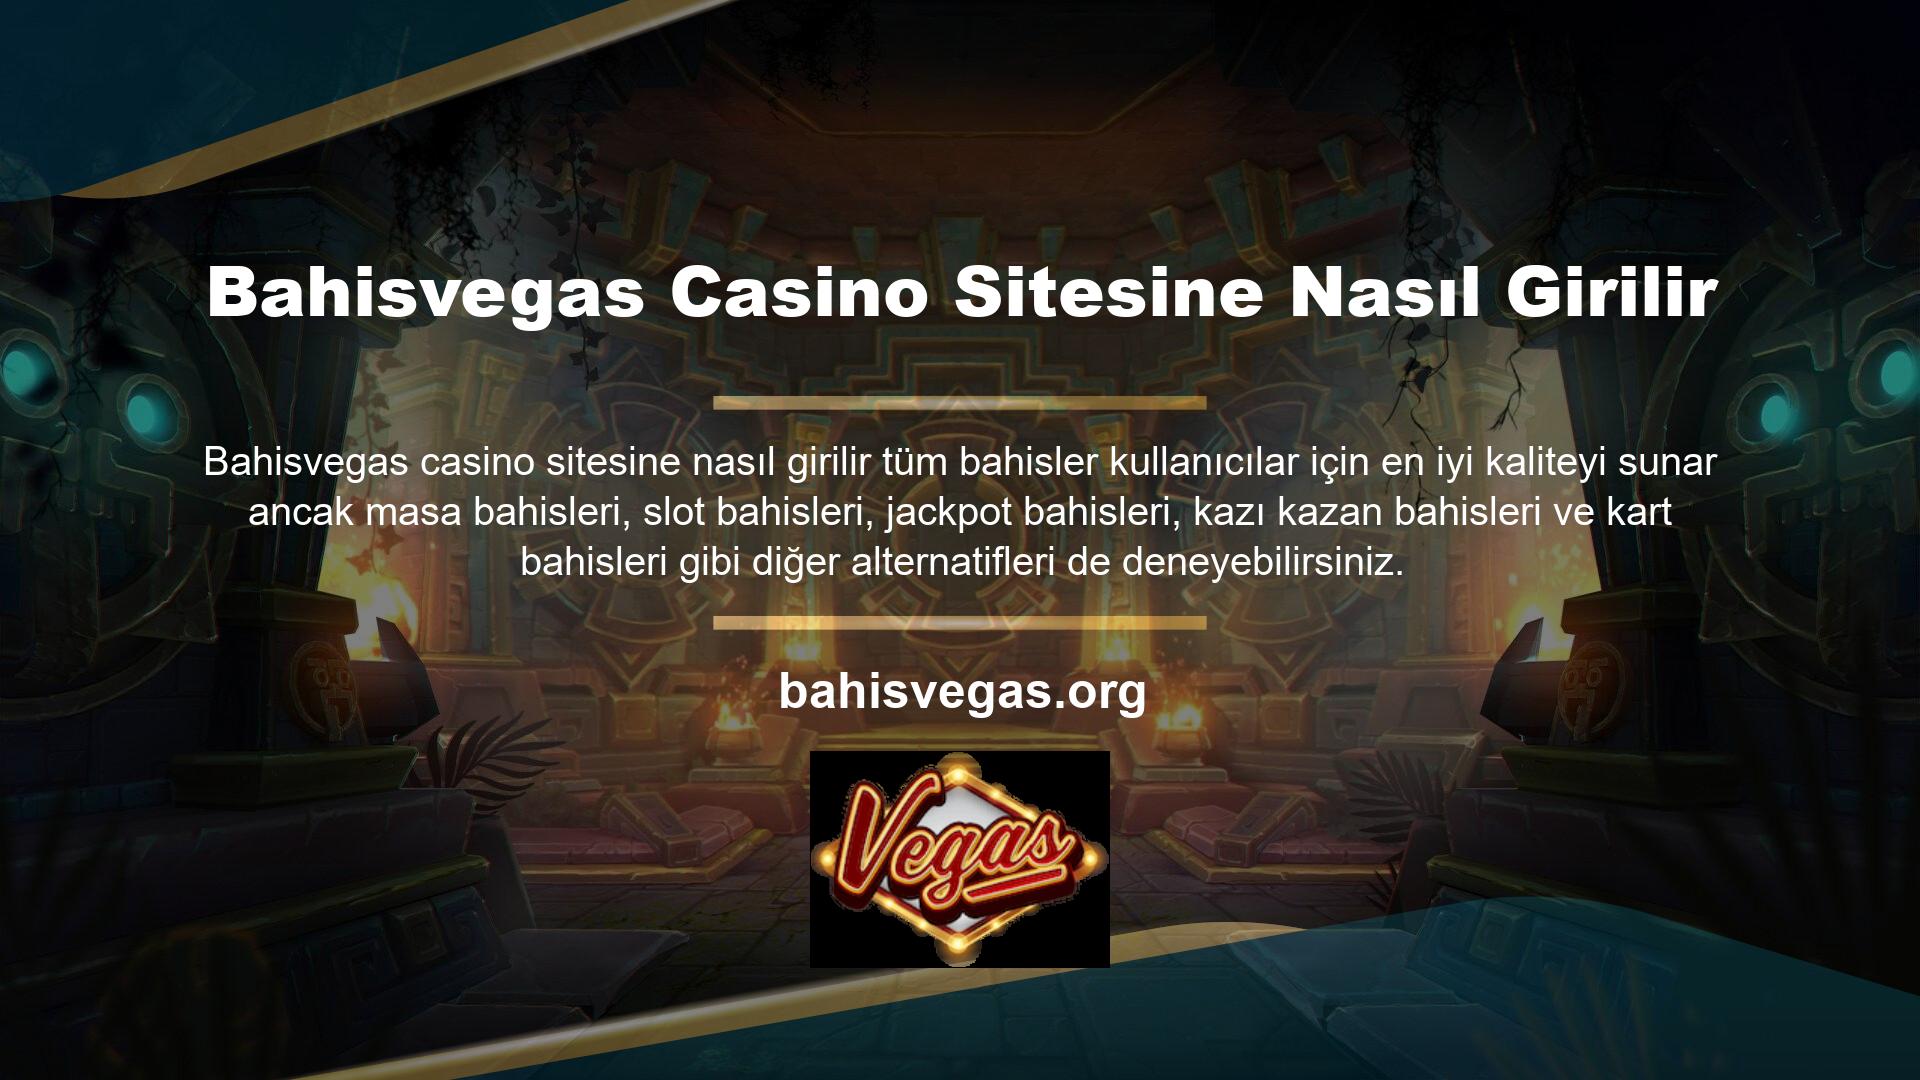 Canlı casino hizmetimiz, gerçek bir krupiyede rulet, blackjack, bakara, poker ve daha fazlasında bahis oynamanızı sağlar